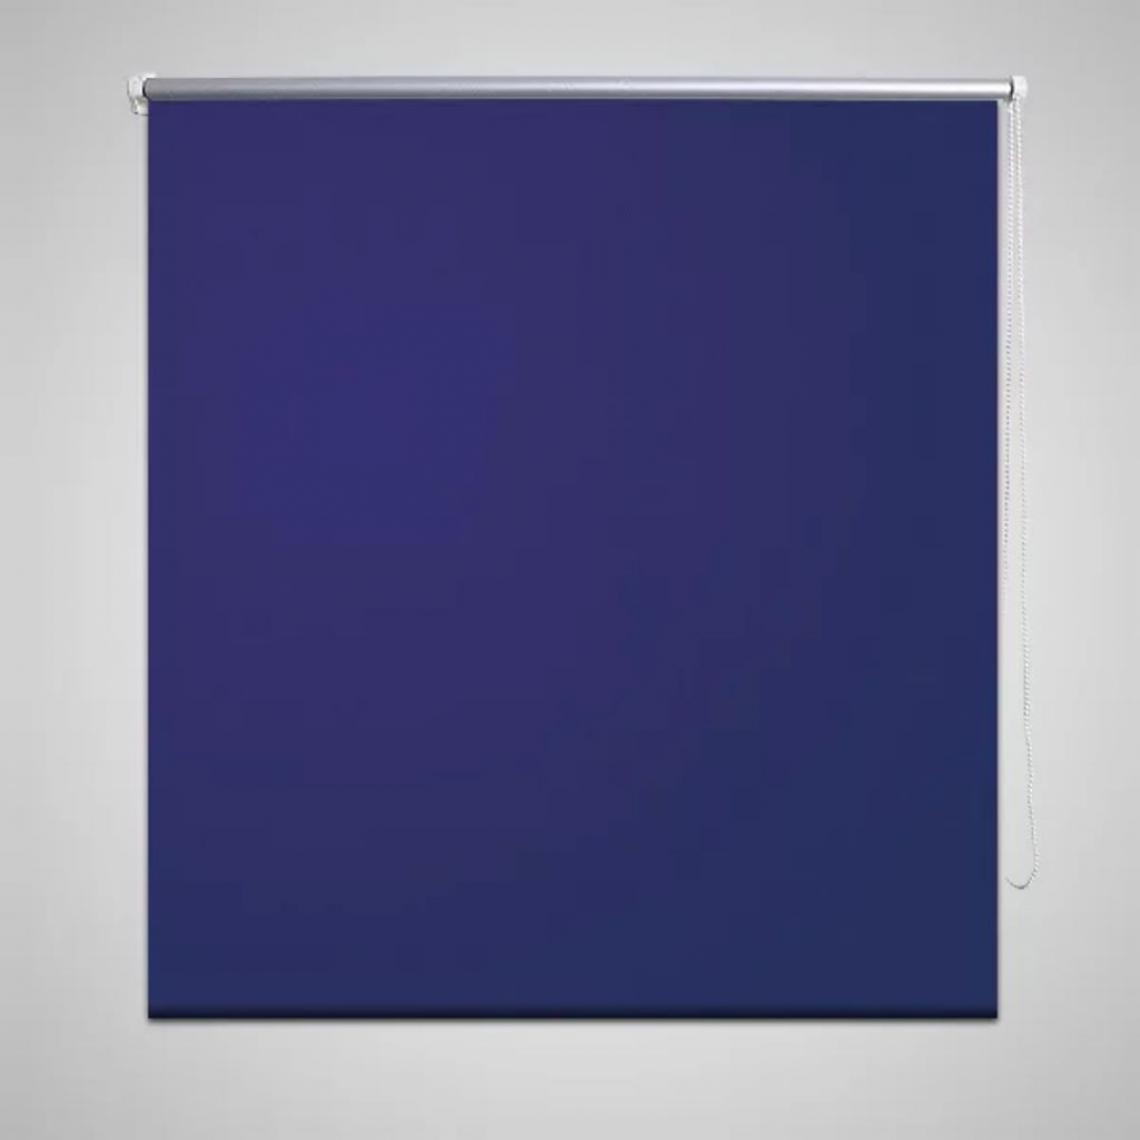 Hucoco - Store enrouleur occultant 160 x 175 cm bleu - Bleu - Store compatible Velux